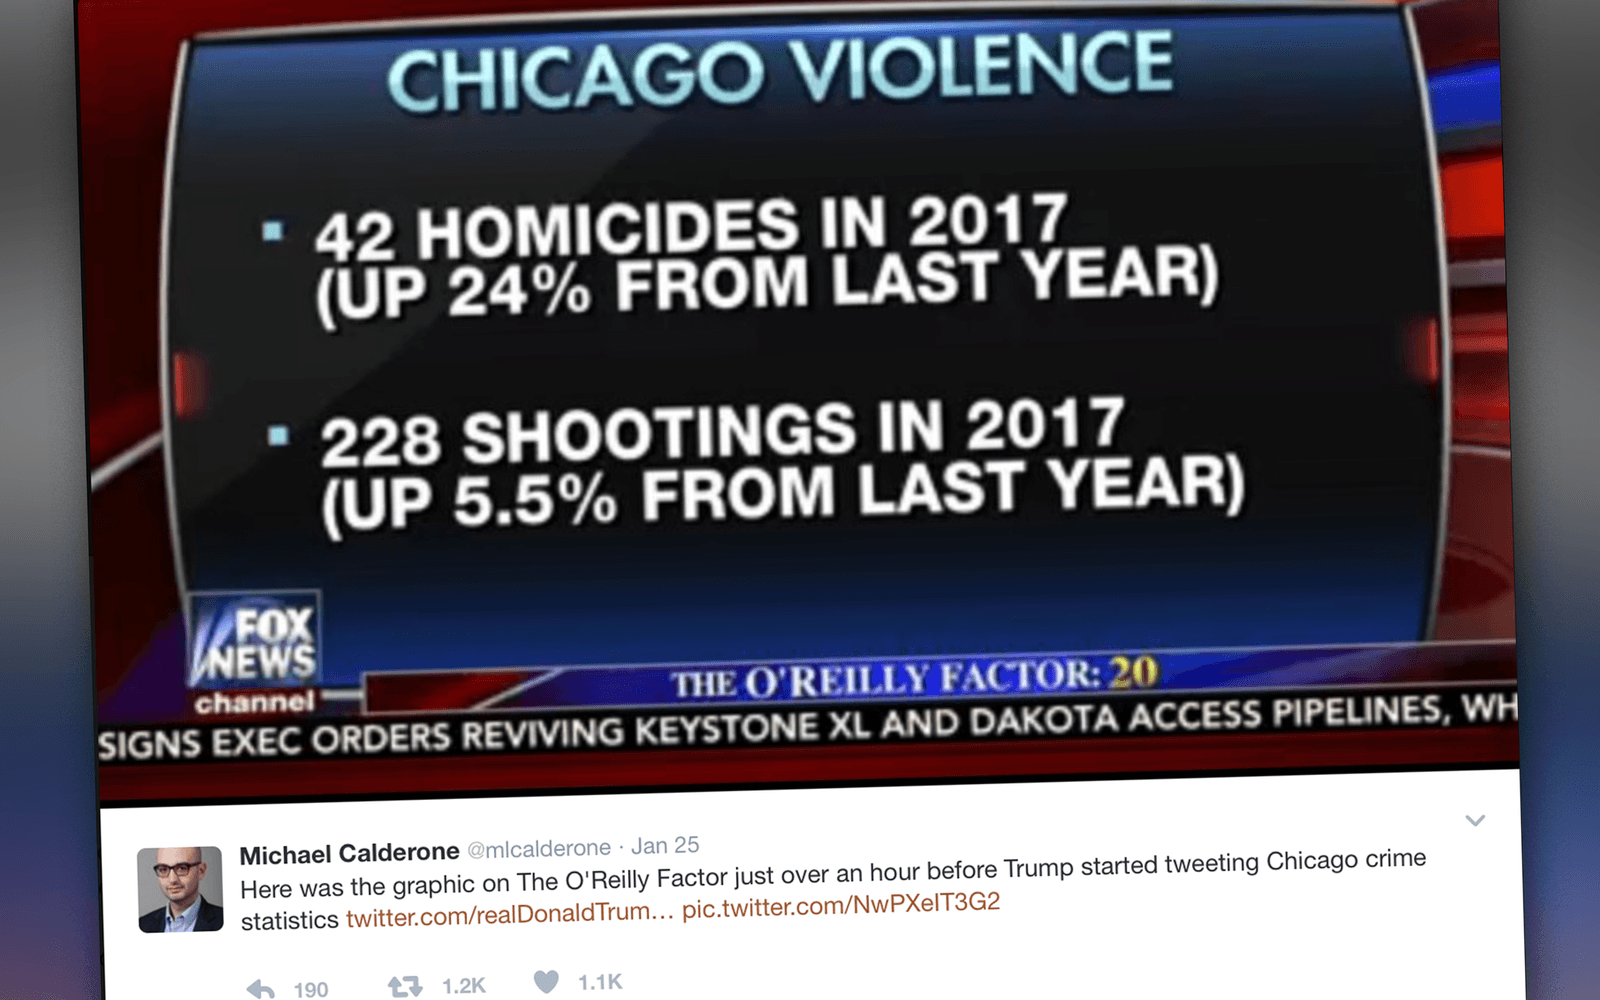 <strong>EXEMPEL 2:</strong> På kvällen den 24 januari gör O'Reilly Factor på Fox News ett nyhetsinslag om mordstatistiken i Chicago.